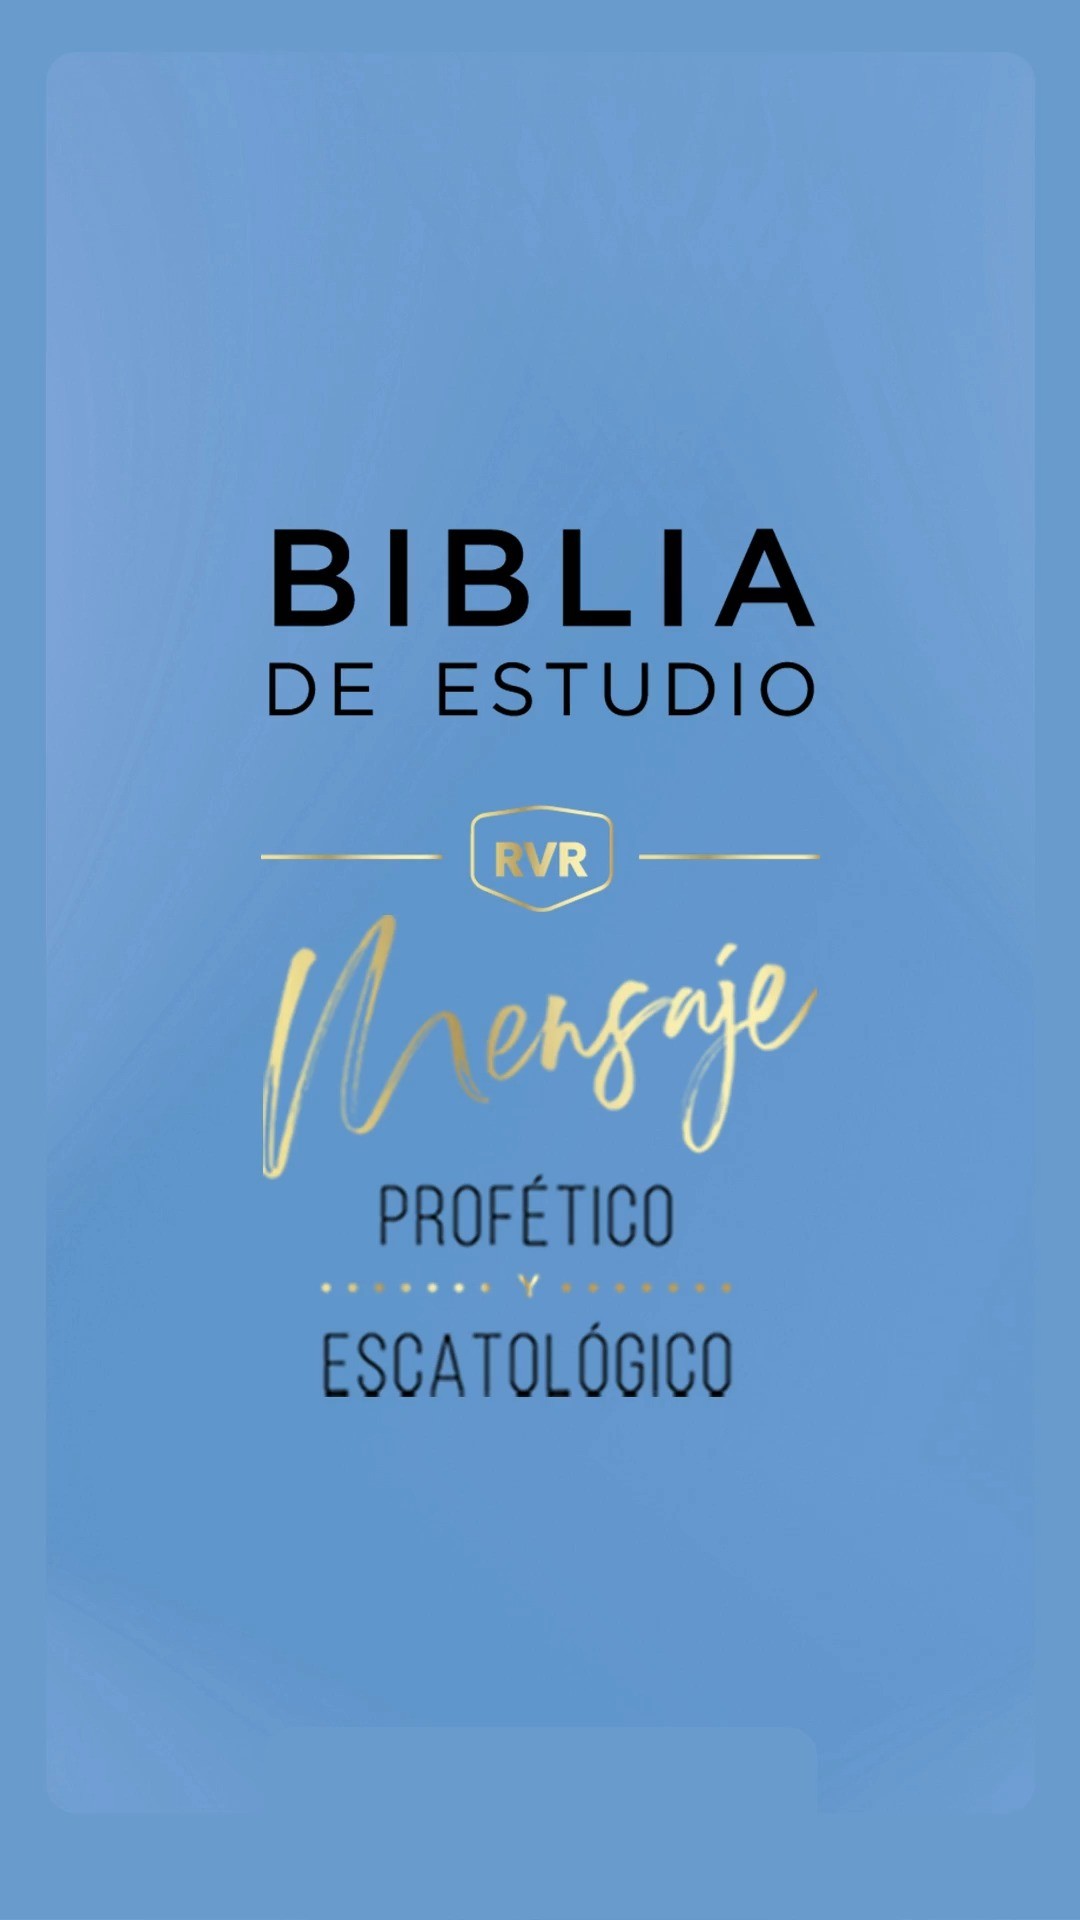 "Una herramienta fantástica" Dr. Fernando Mazariegos.

Conoce sus características y beneficios para tu ministerio. 📖 La Biblia de Estudio Mensaje Profético y Escatológico